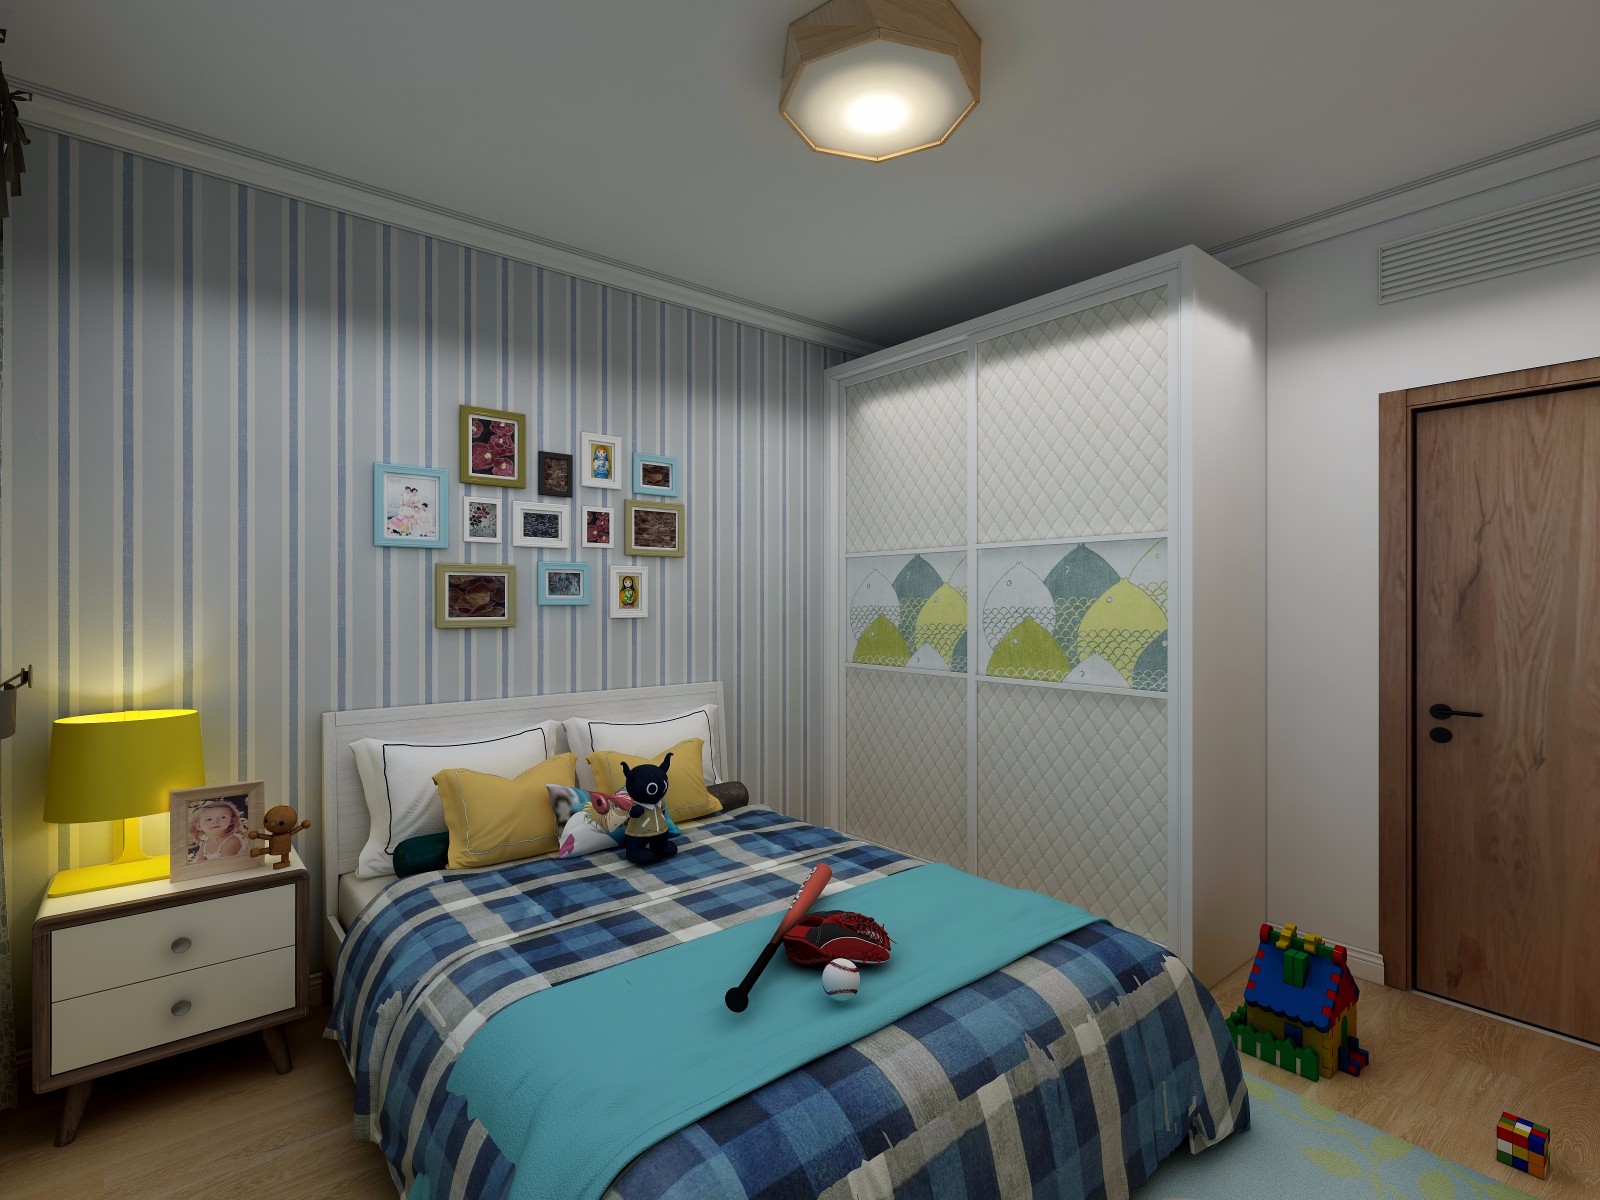 男孩房间,淡蓝色墙漆与蓝色条形壁纸搭配,童趣十足